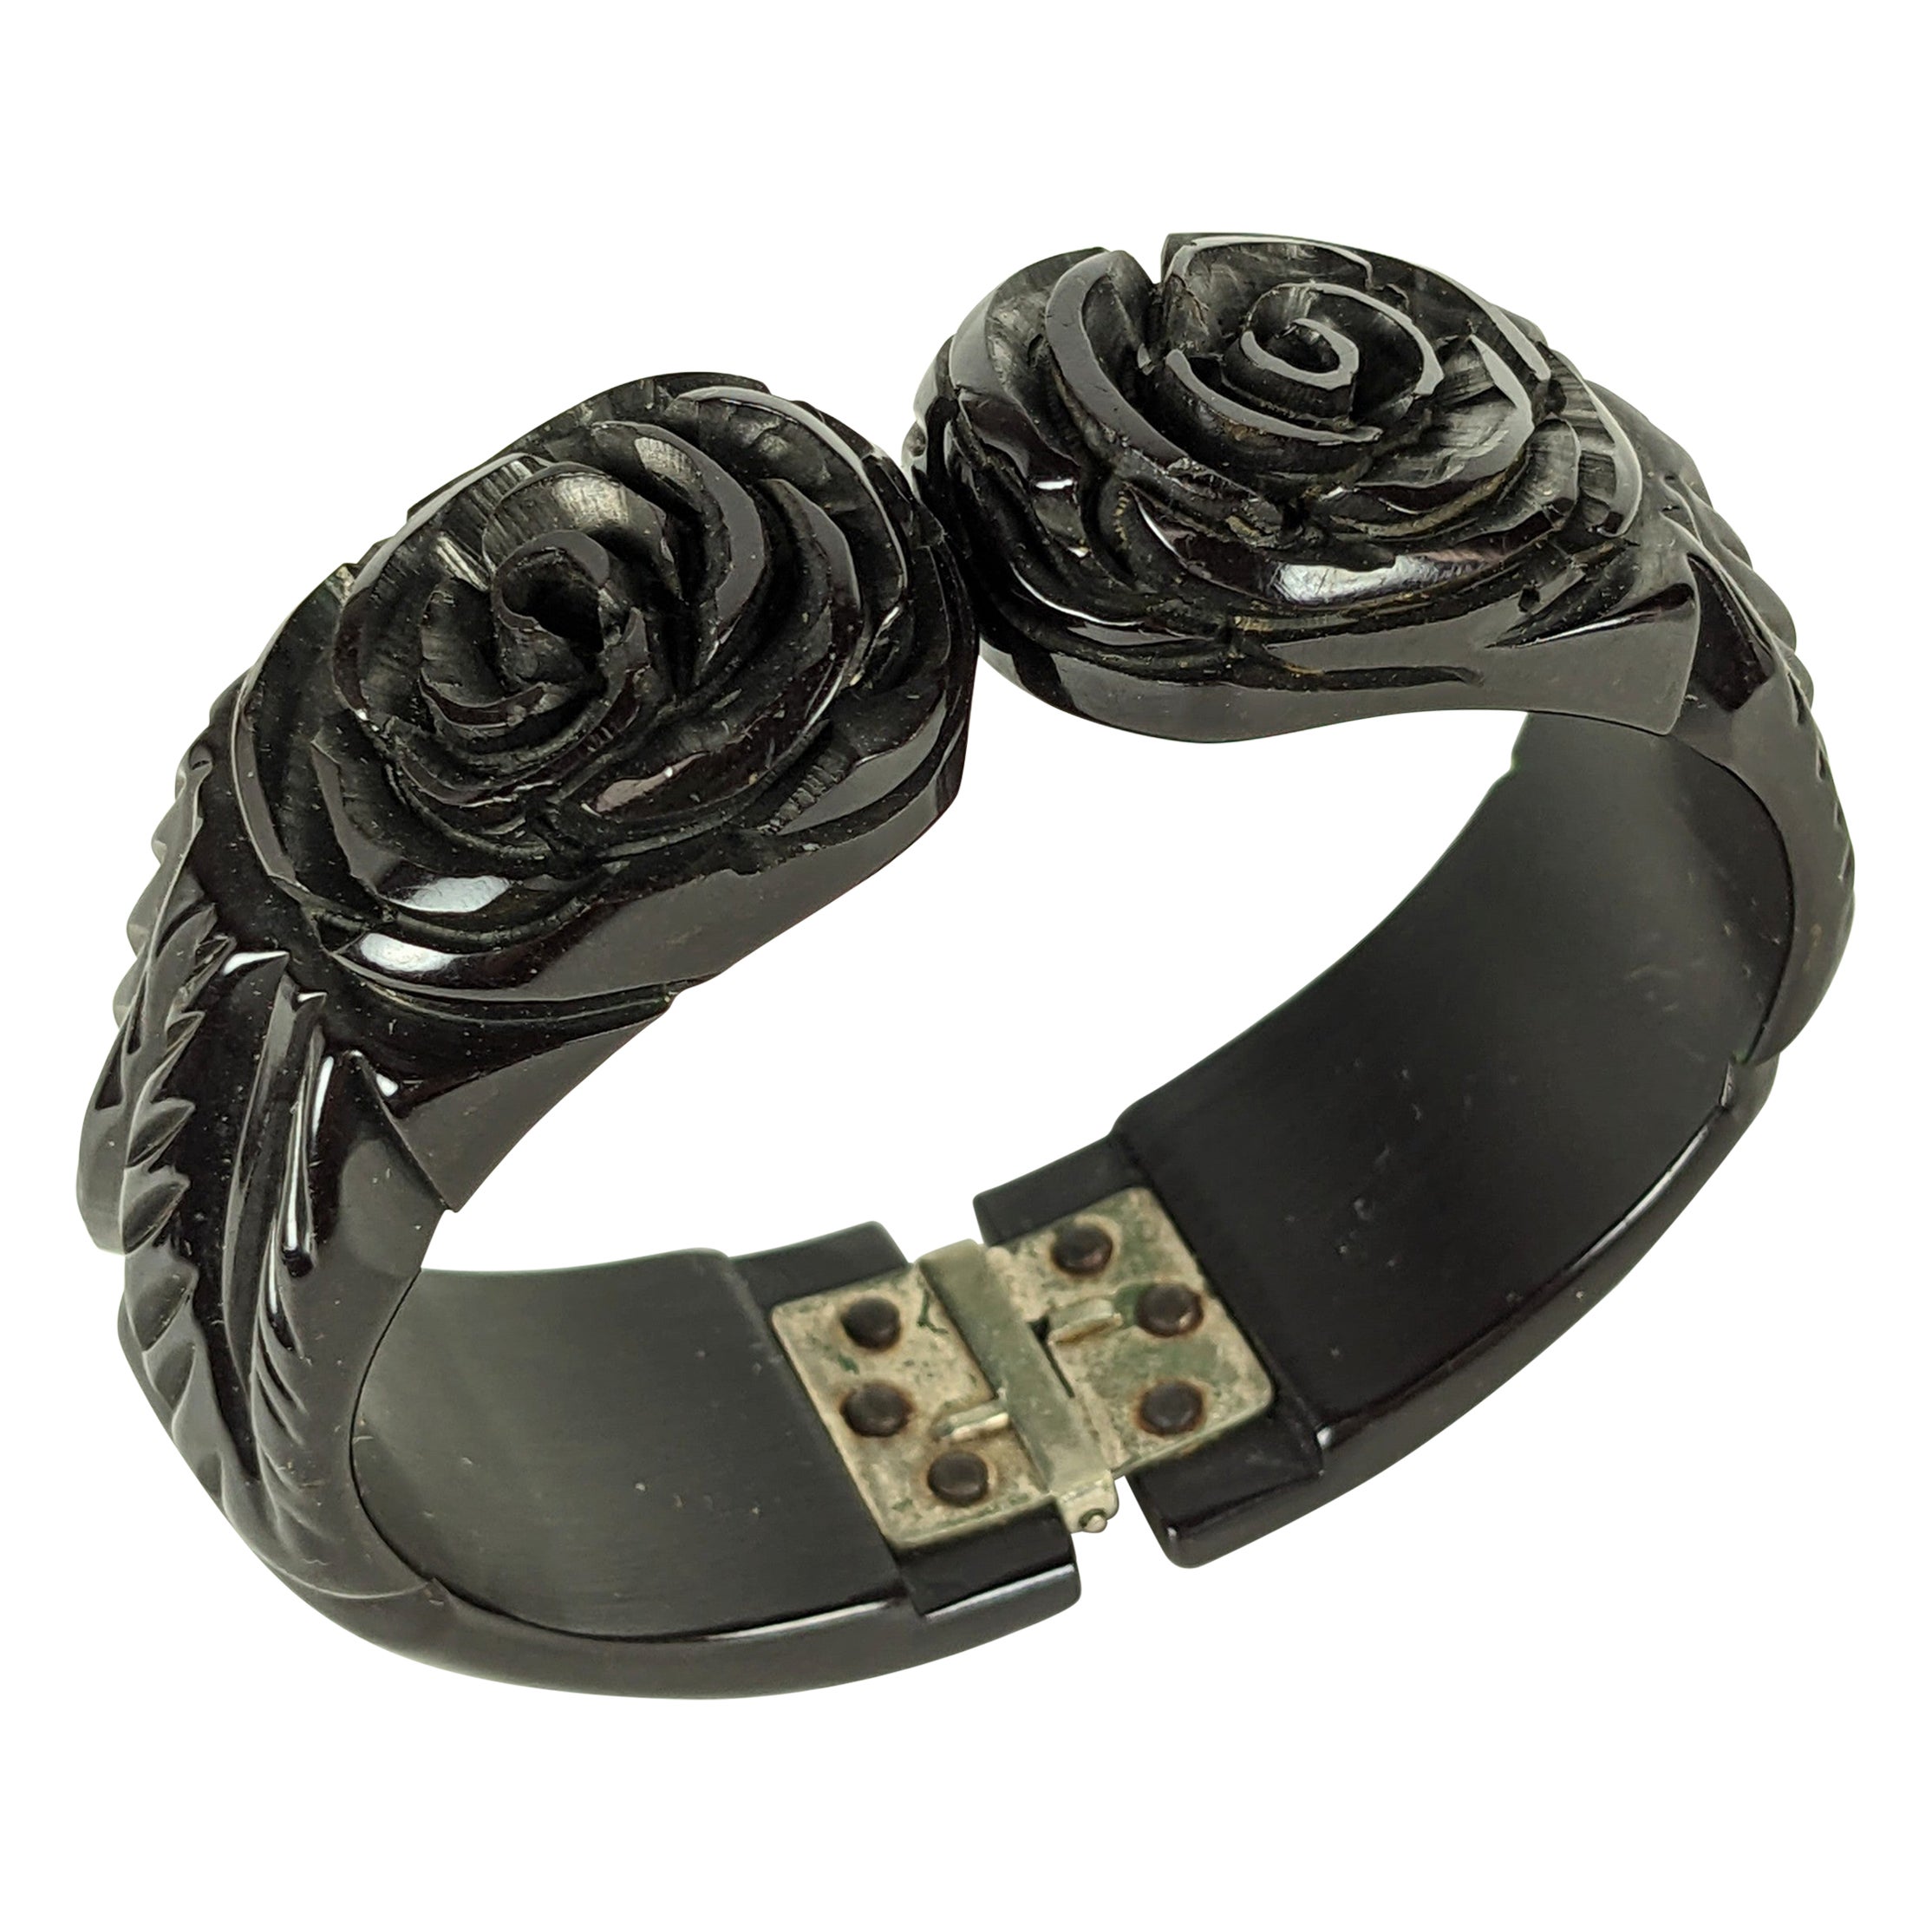 Art Deco Bakelite Carved Rose Clamper Bracelet